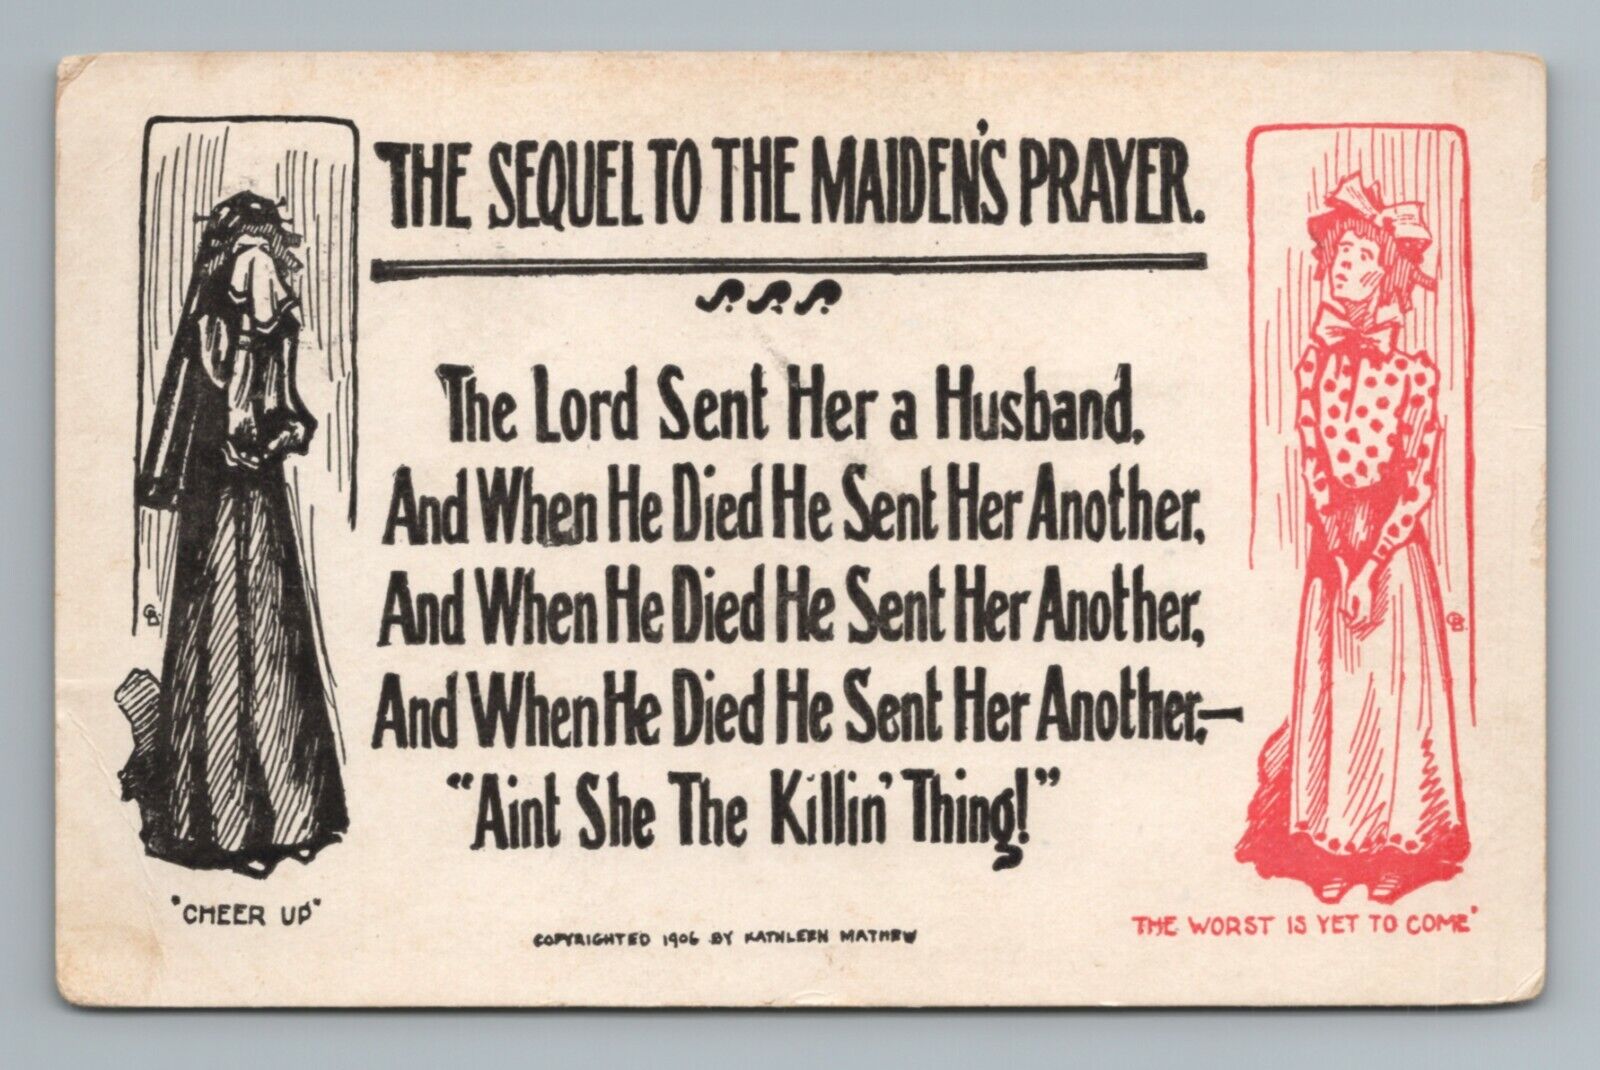 Maiden's Prayer 1900s Vintage Postcard